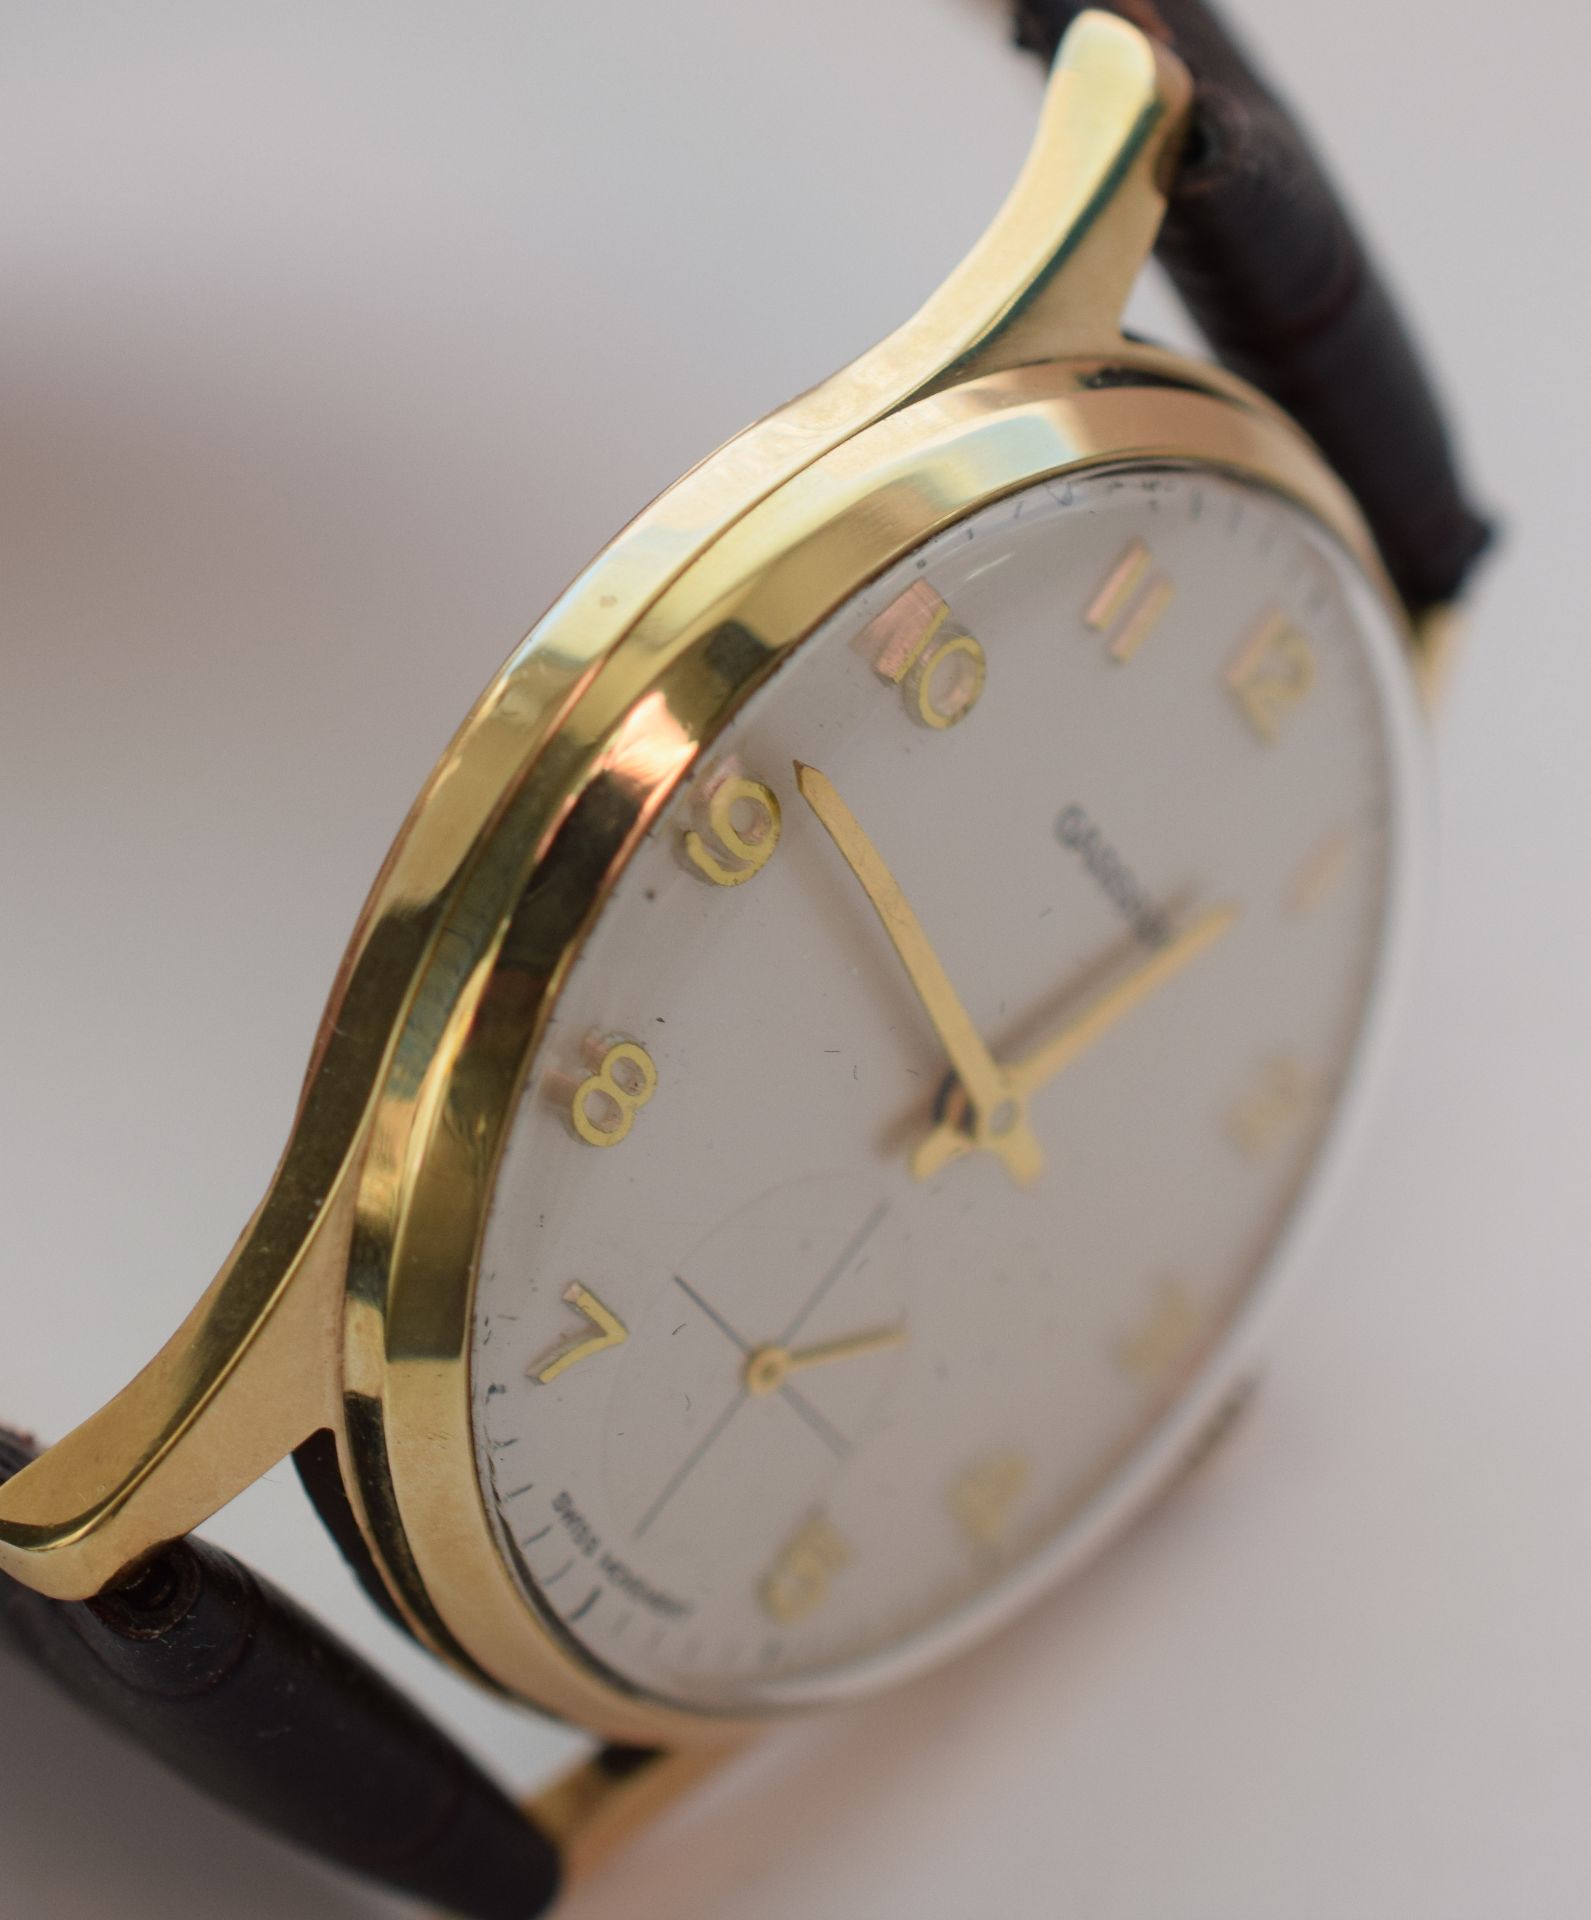 9ct Solid Gold Garrard Gentleman's Manual Wind Watch - Image 7 of 7